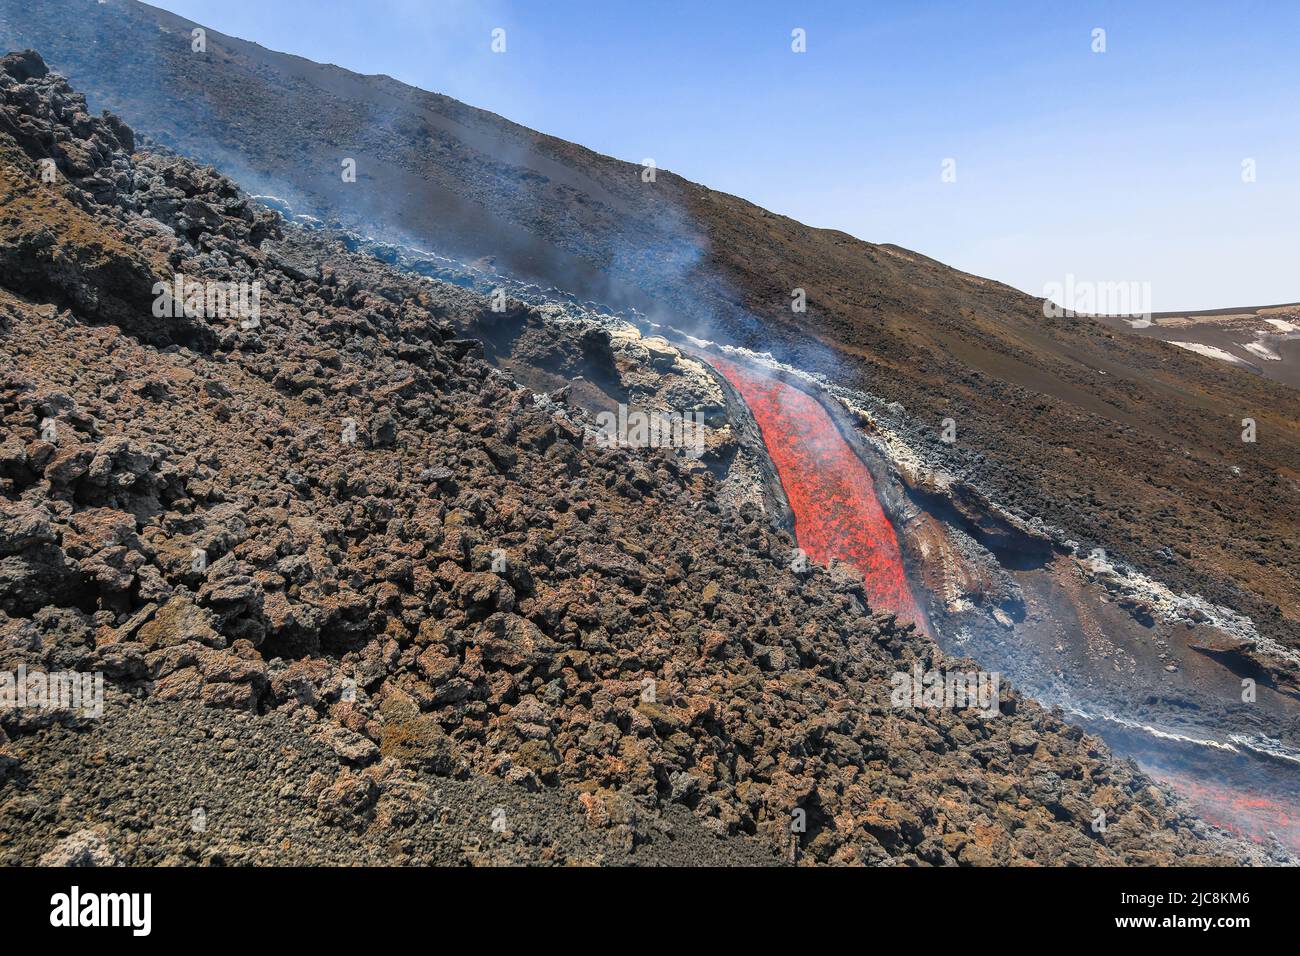 La caída de lava del Etna que fluye sobre el volcán de Sicilia en el Valle del Bove con el humo y el canal de flujo de lava Foto de stock